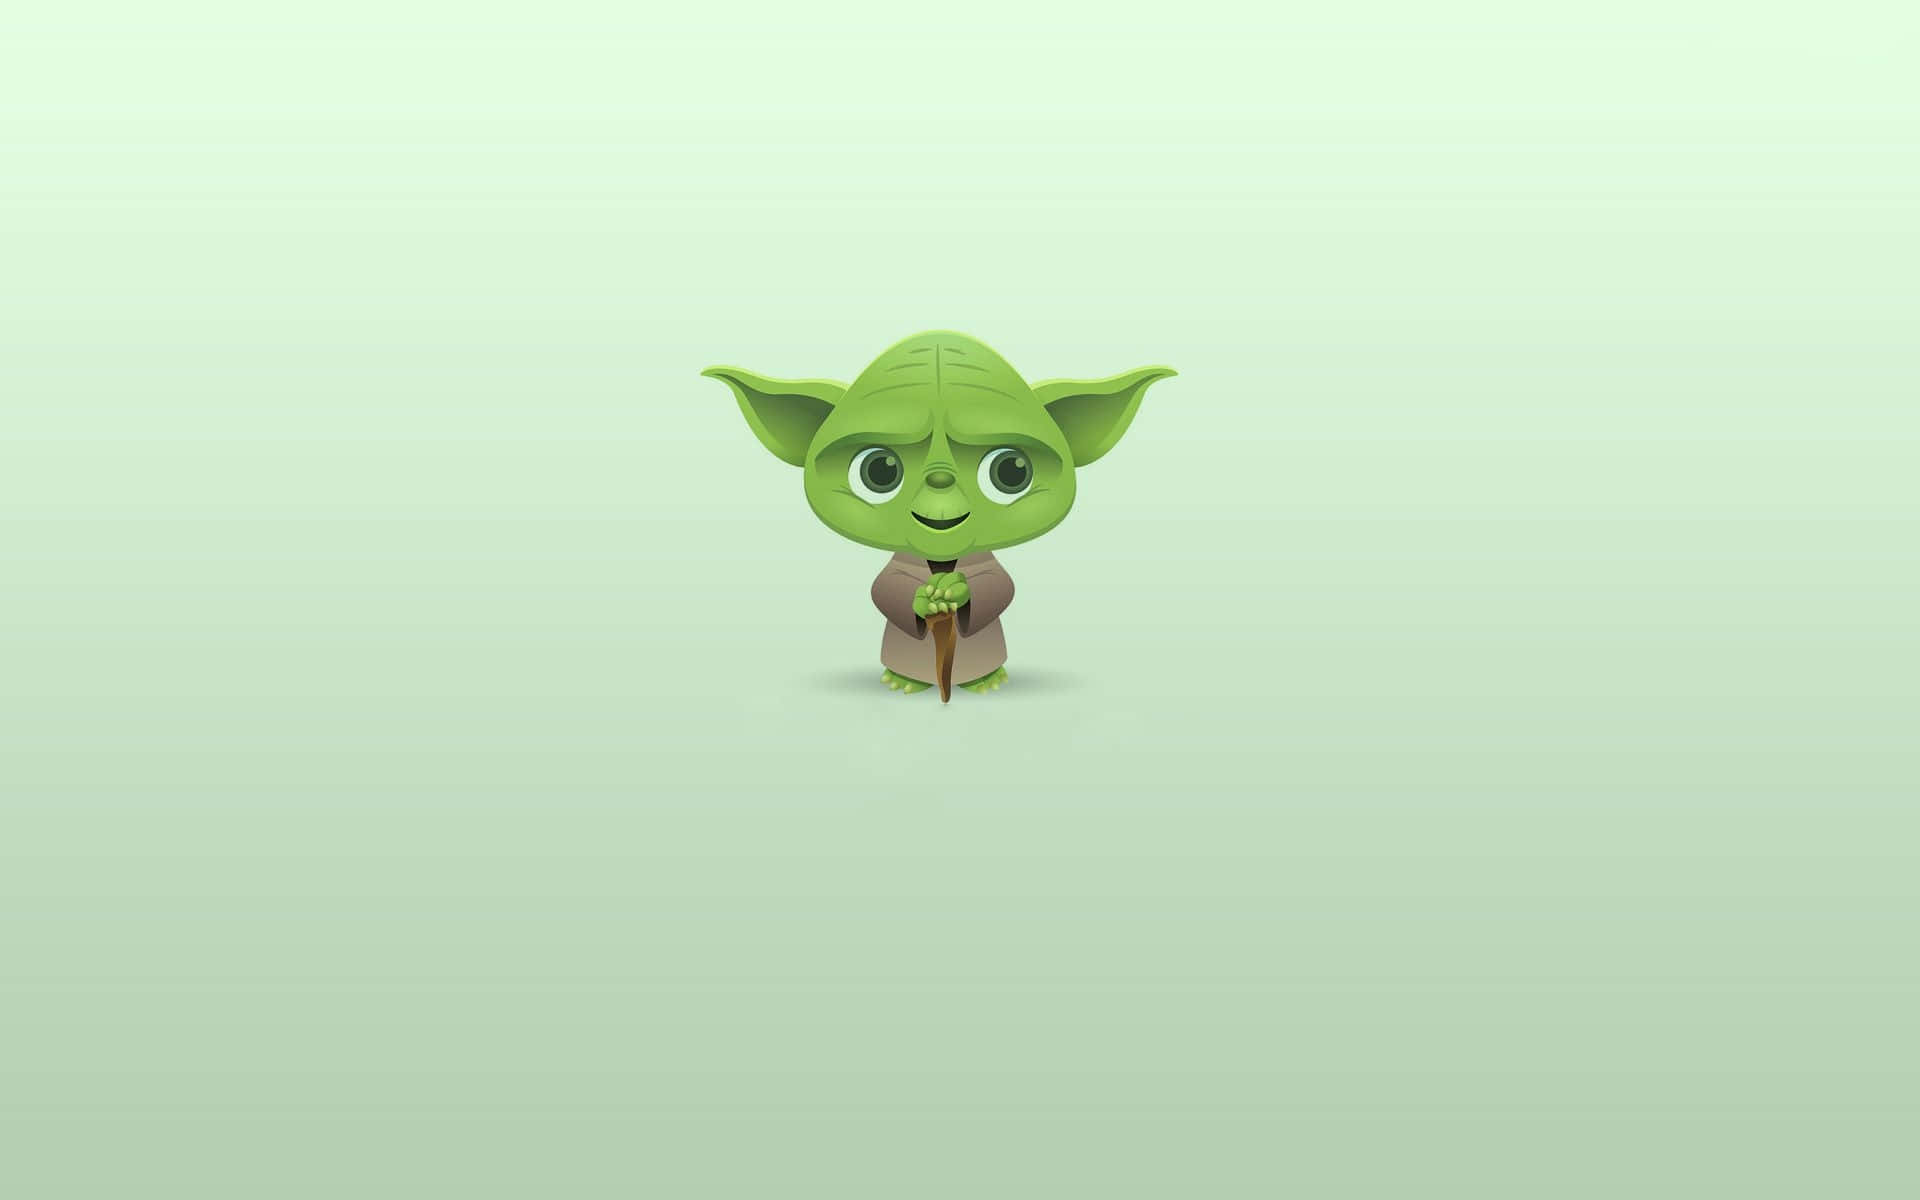 Cute Funny Star Wars Yoda